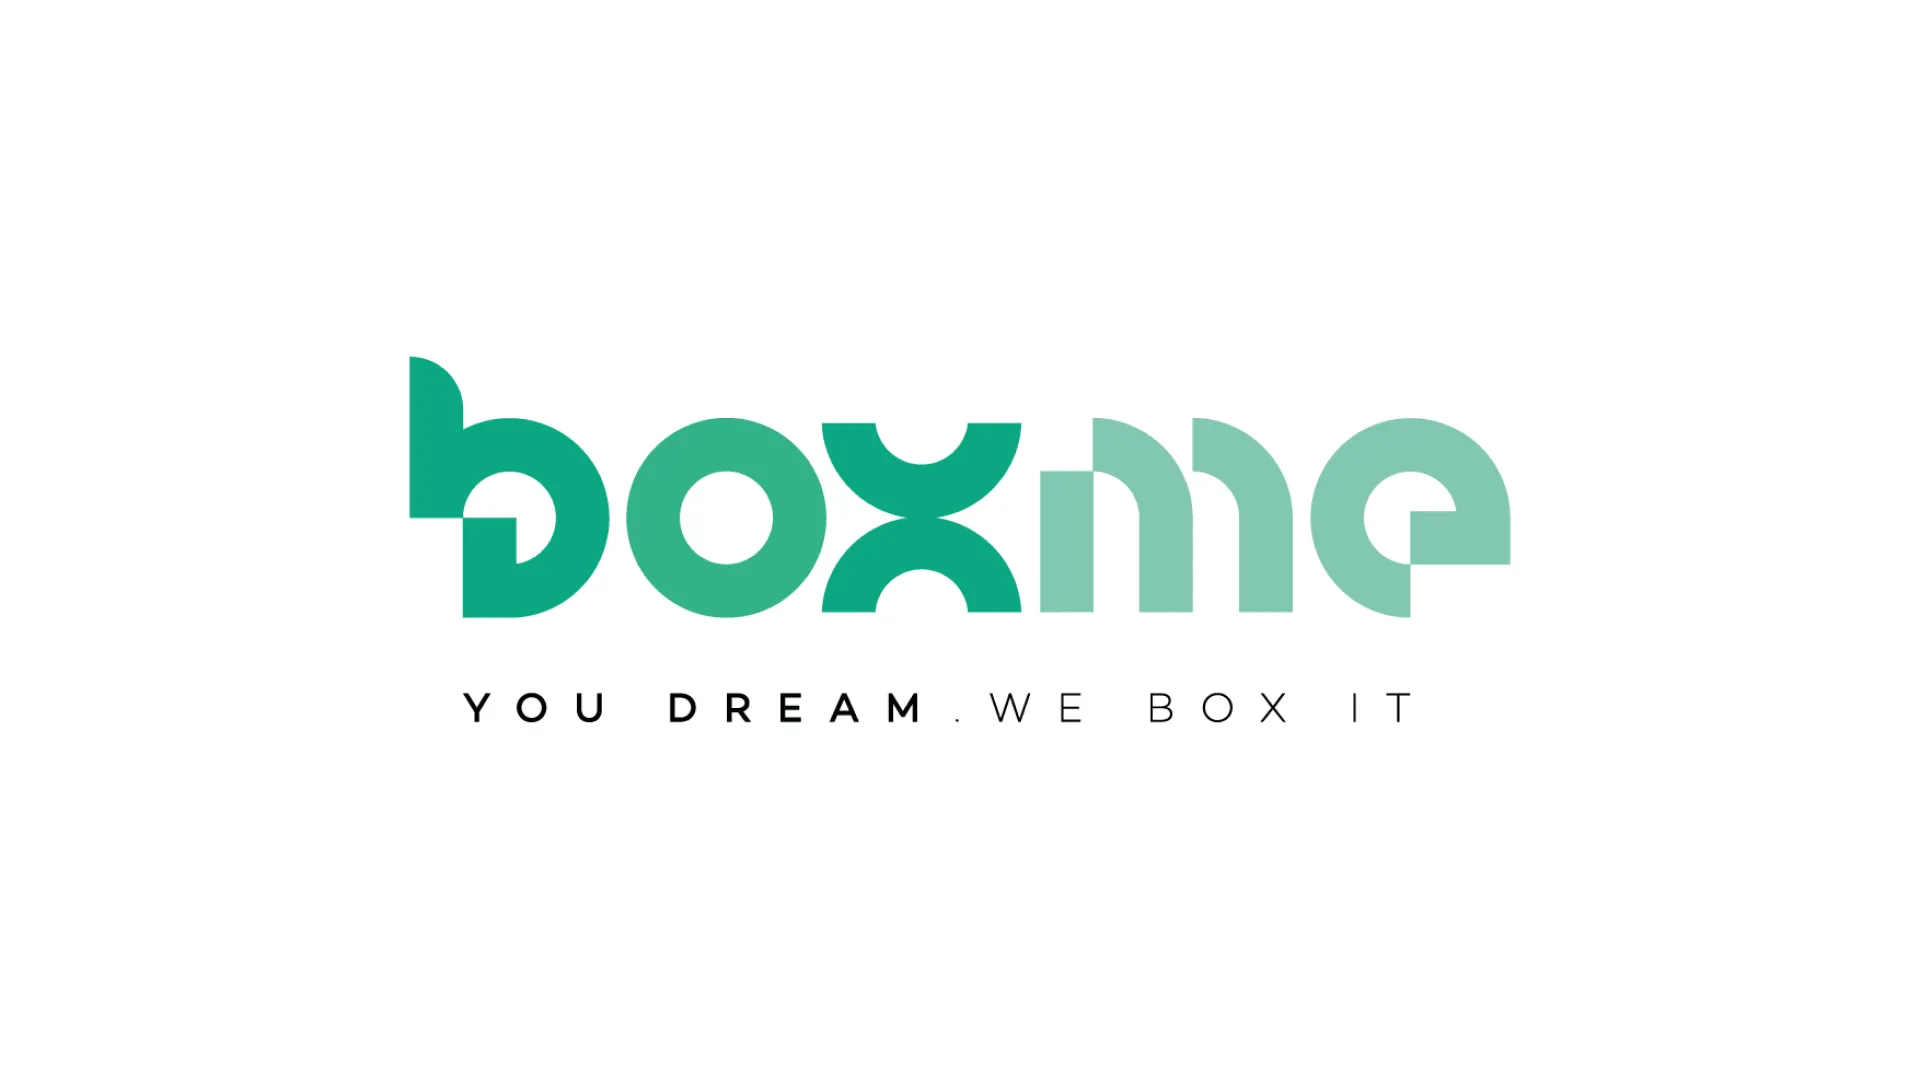 BoxMe comunicação estratégica. You Dream. We box it.